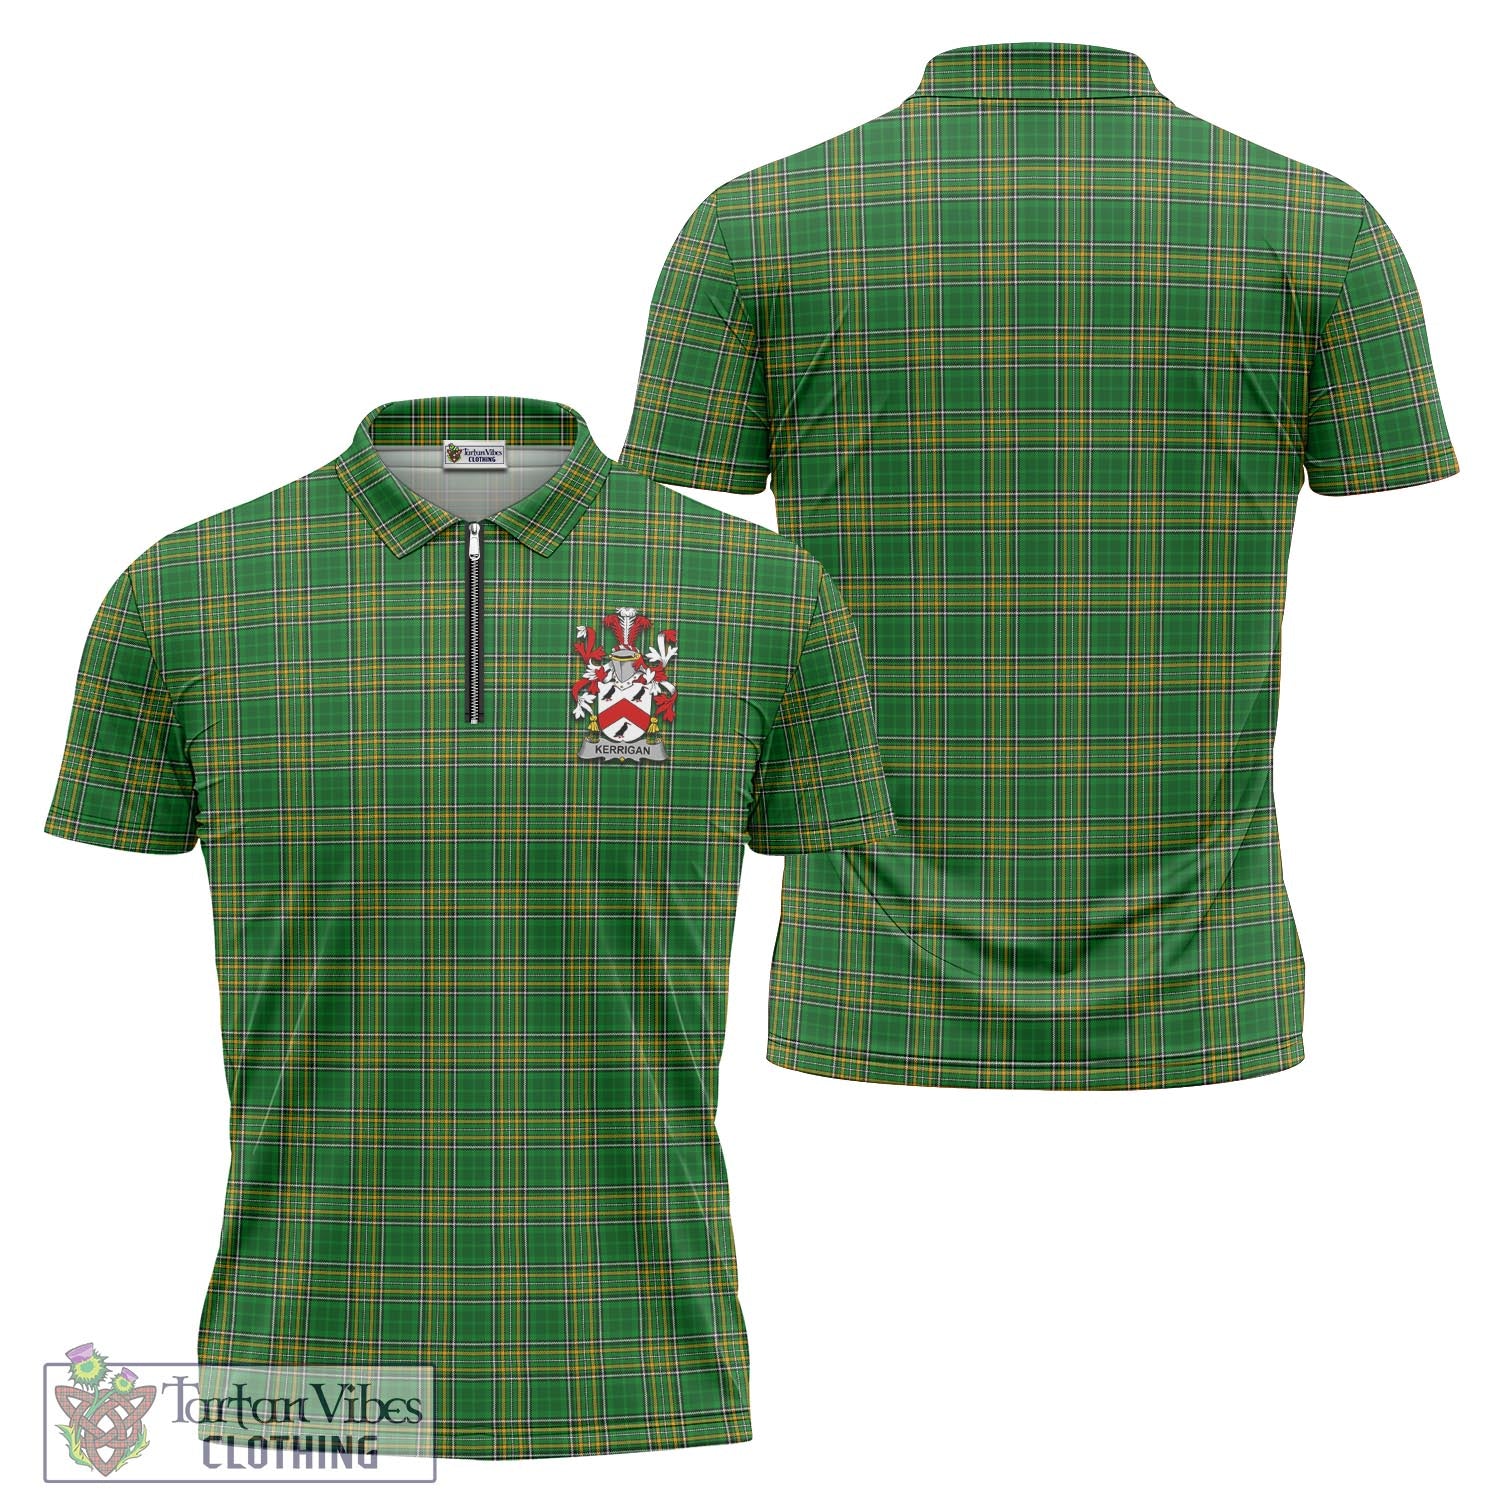 Tartan Vibes Clothing Kerrigan Ireland Clan Tartan Zipper Polo Shirt with Coat of Arms